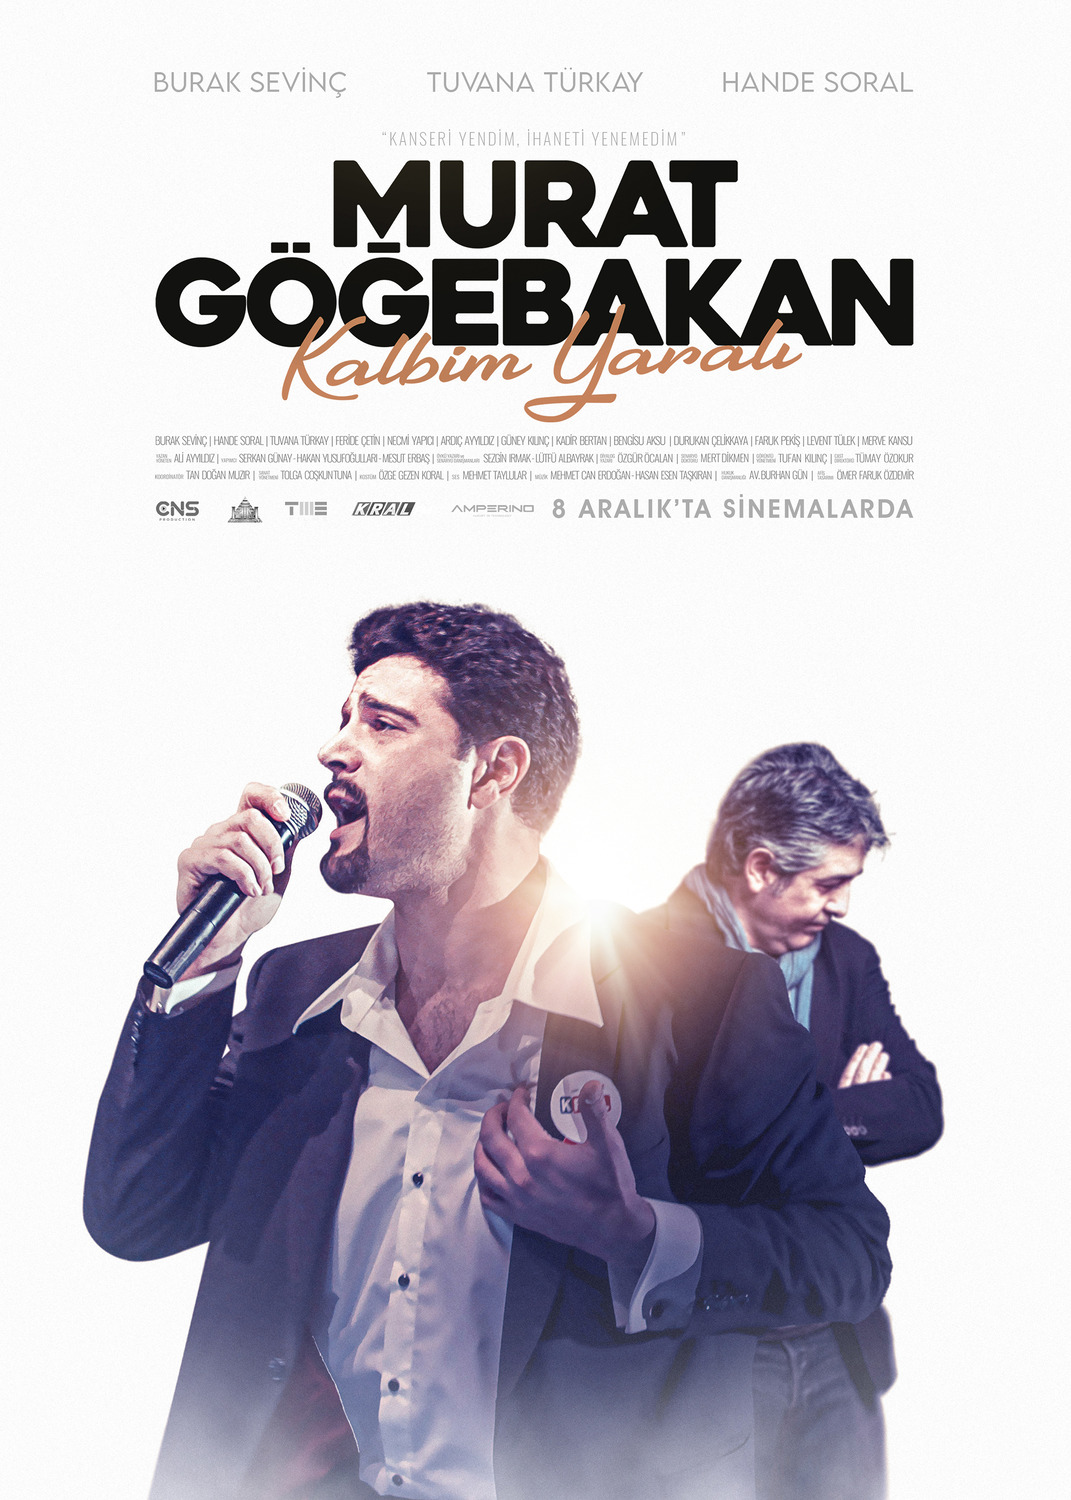 Extra Large Movie Poster Image for Murat Gögebakan: Kalbim Yarali (#11 of 14)